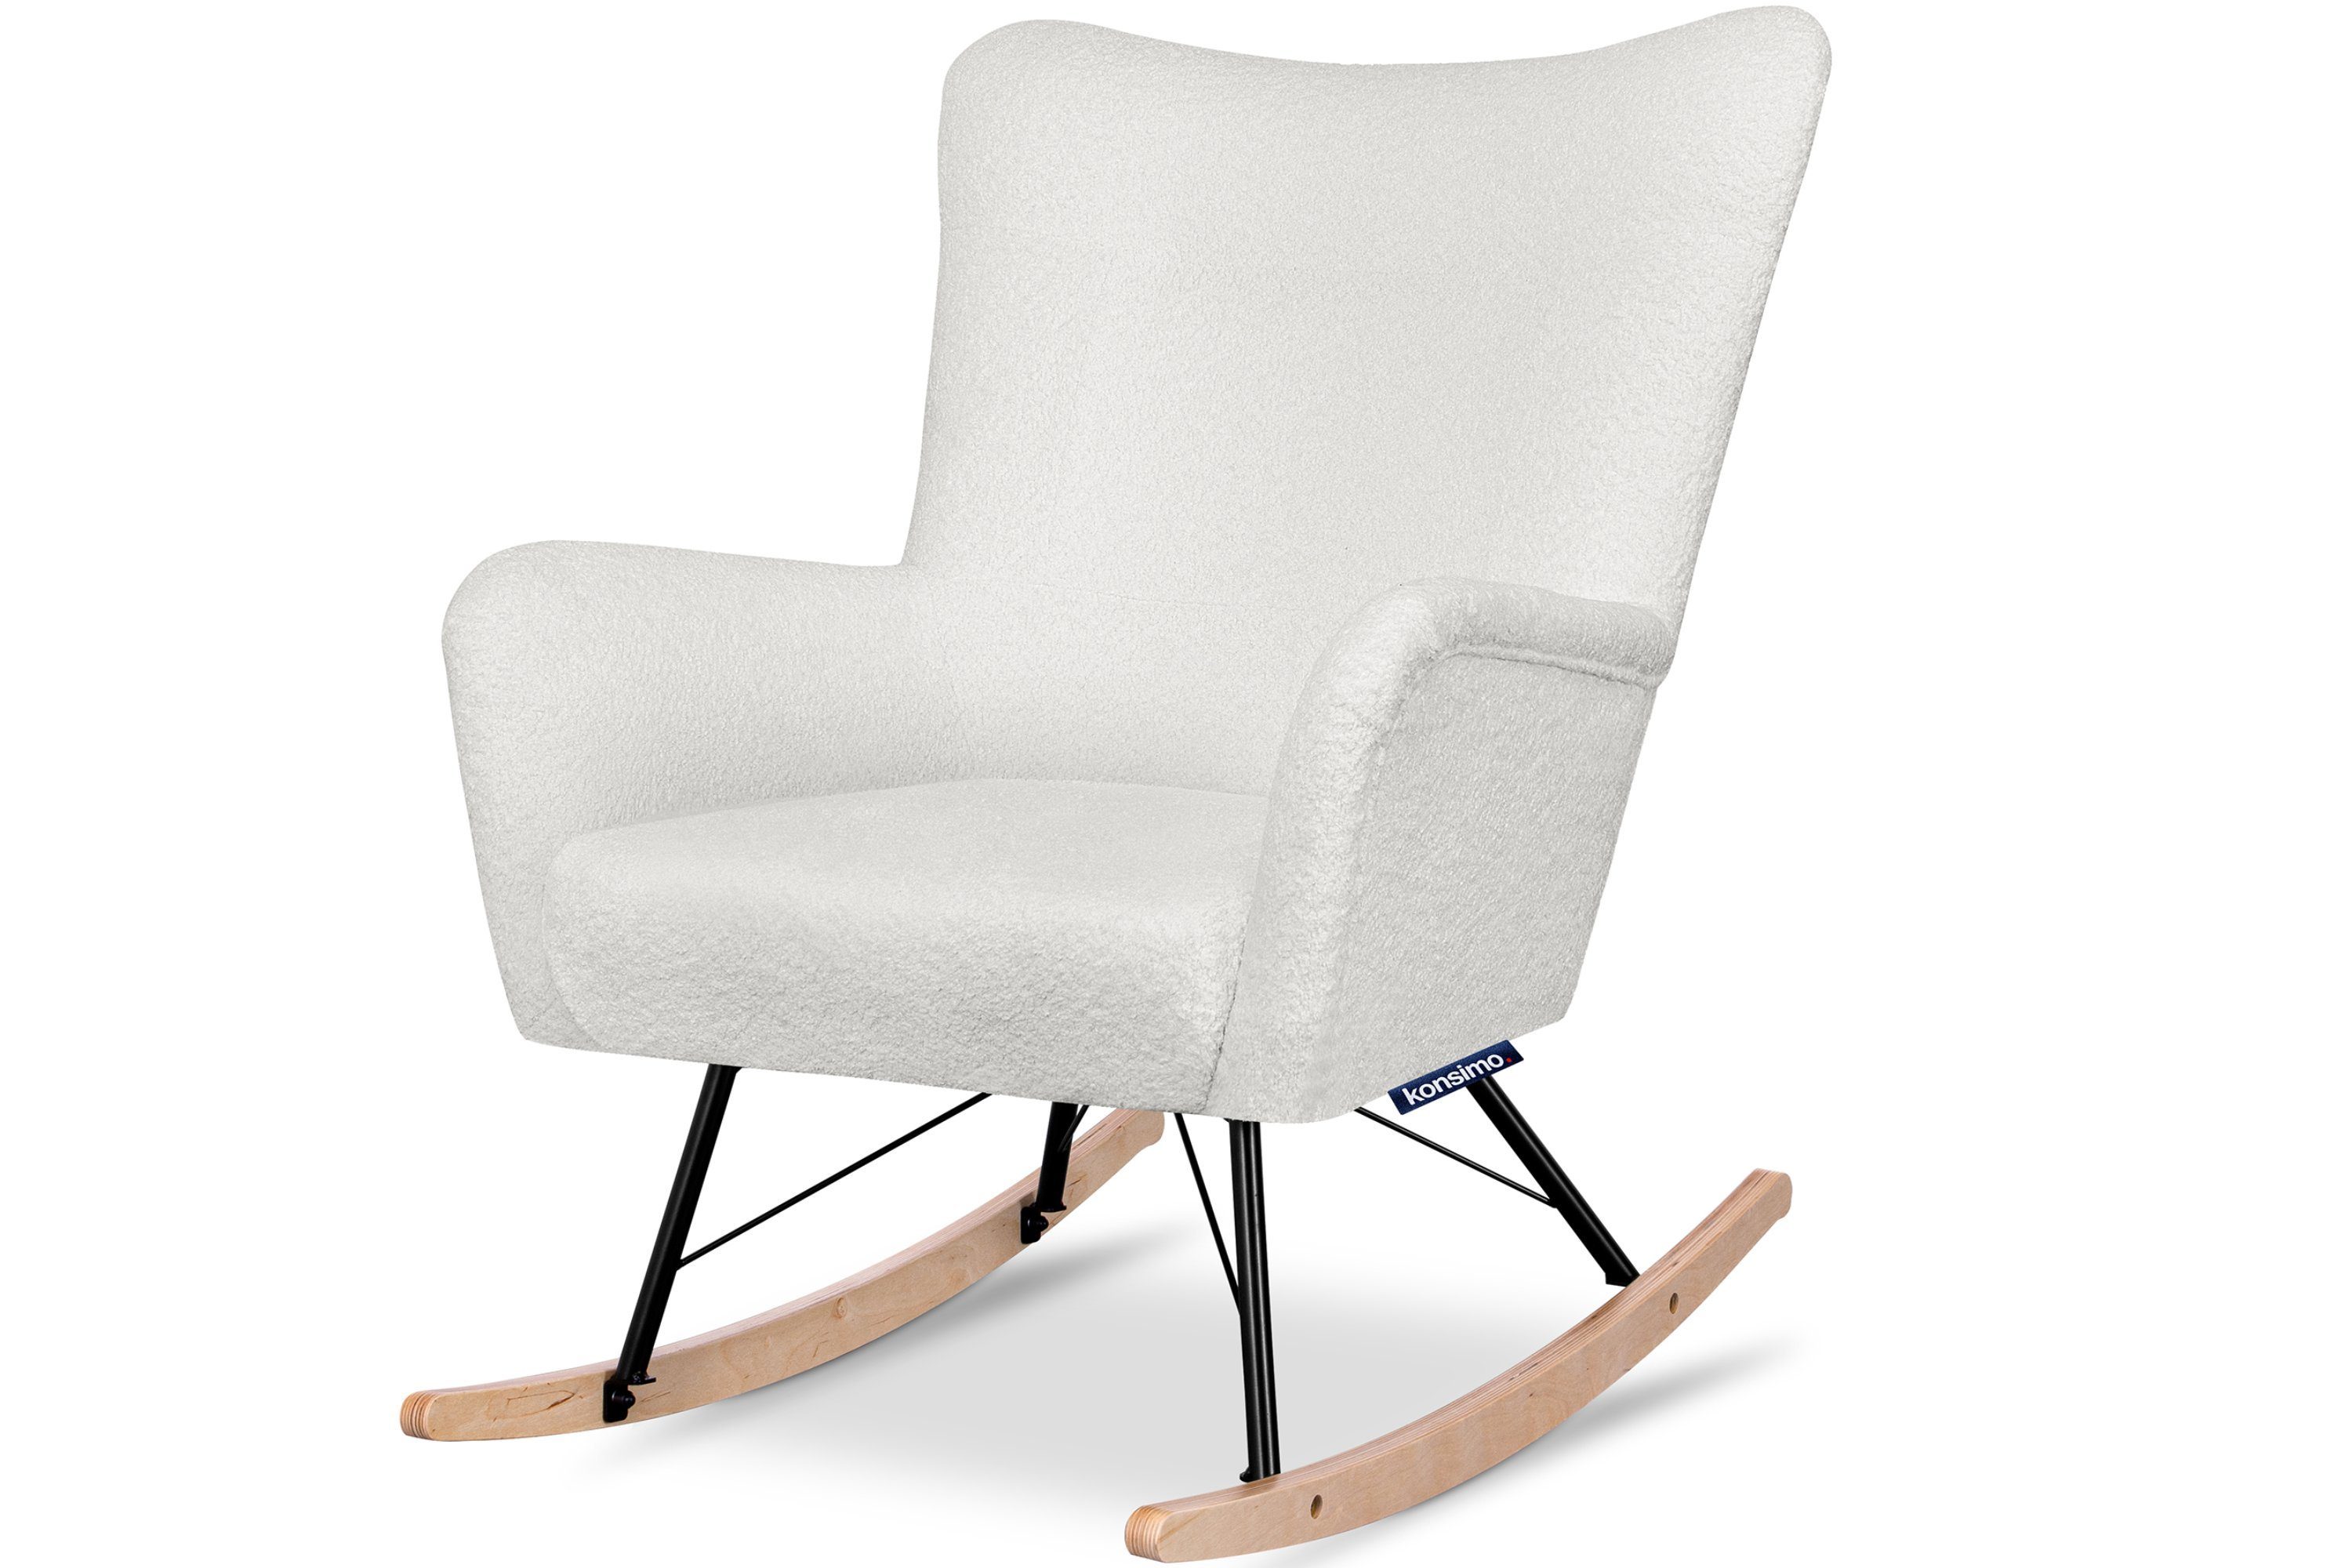 Konsimo Schaukelsessel ADDUCTI Stillsessel, breiter Sitz für mehr Komfort, ein Schaukelstuhl für jeden Stil, Hergestellt in EU cremefarben | cremefarben